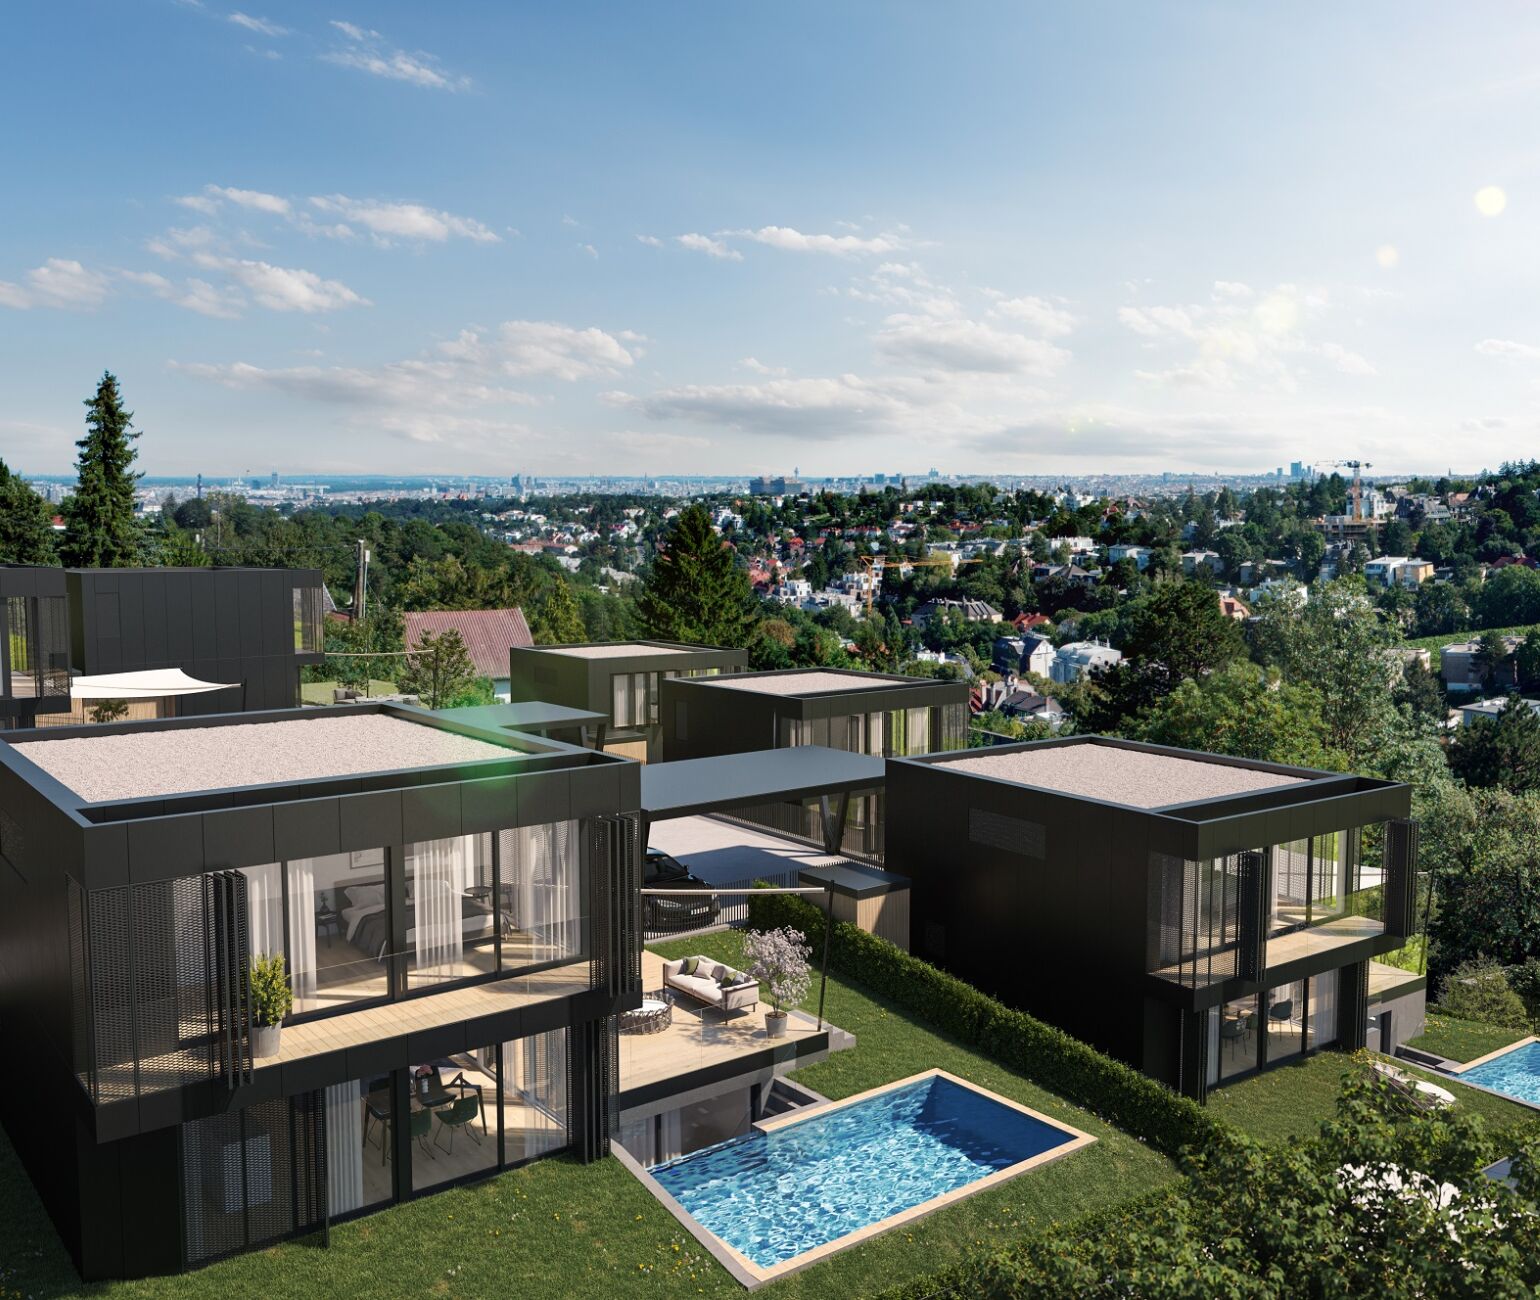 Das aktuelle Luxus-Neubauprojekt der 3SI Immogroup: 17 exklusive Villen werden bis Sommer 2023 am Döblinger Hackenberg errichtet. 